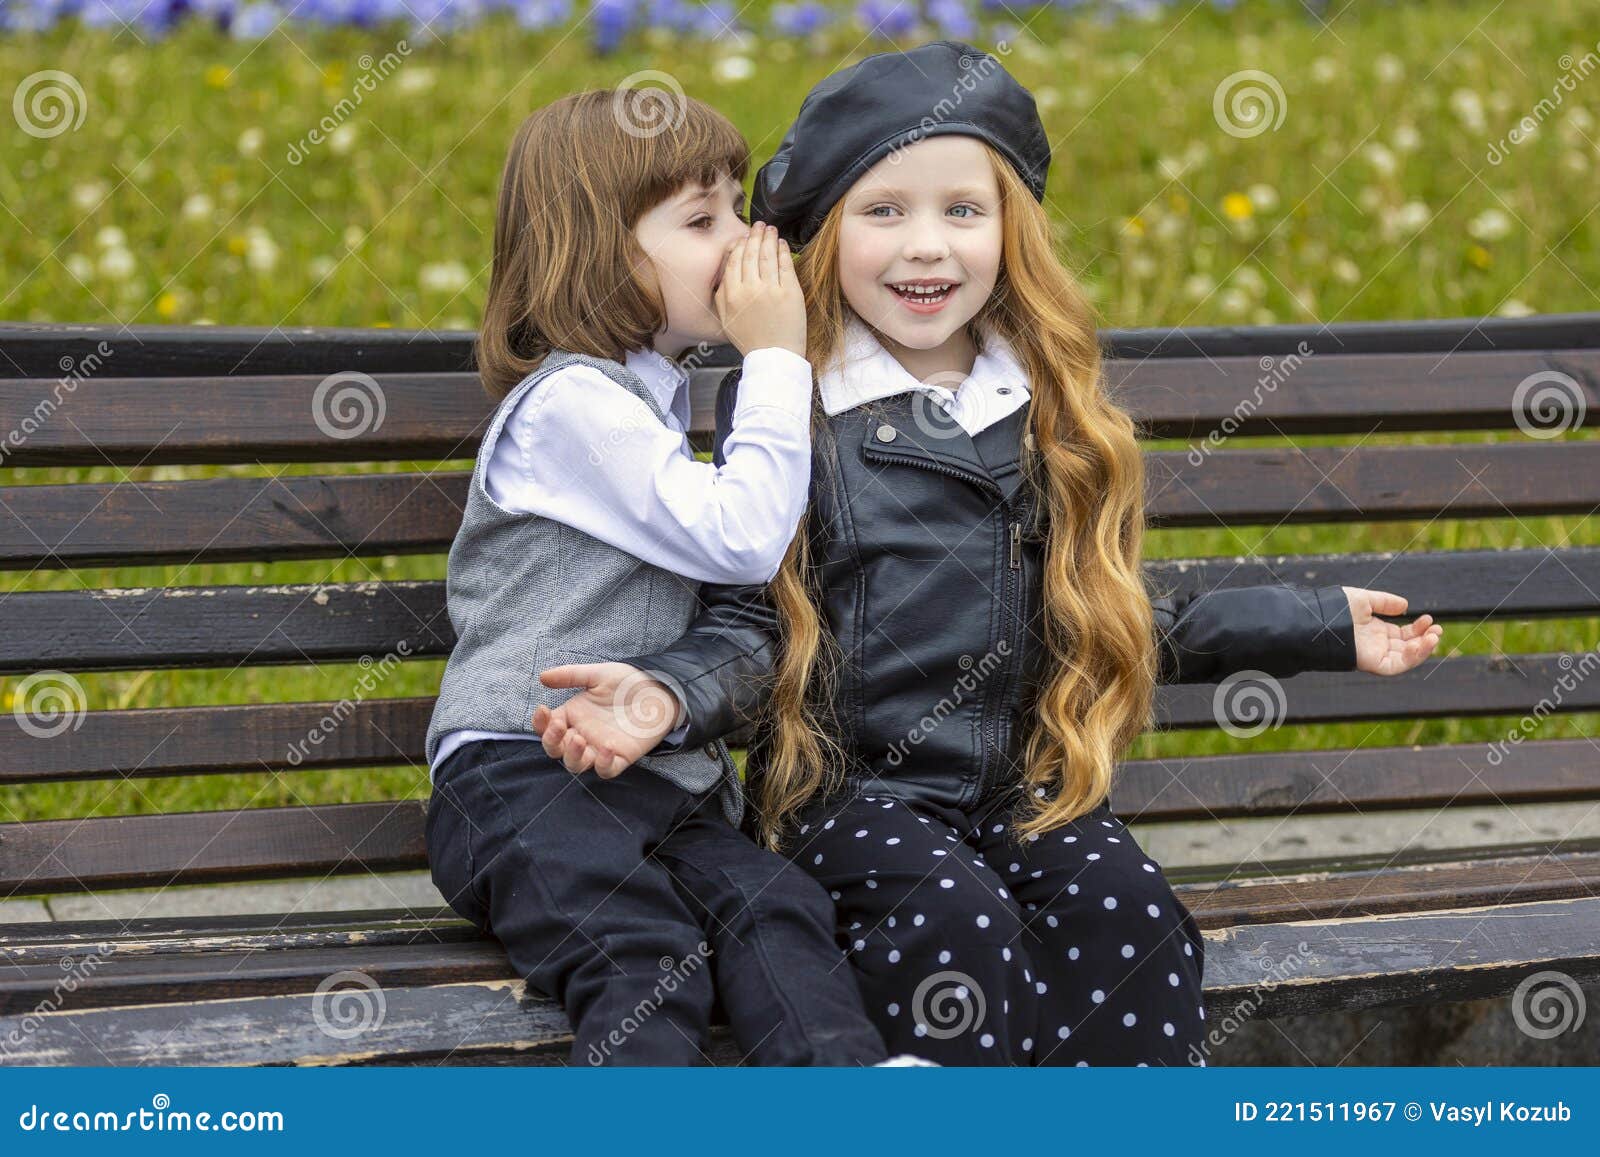 Kinderen Zitten Op Een Bankje in De Stad Stock Afbeelding - Image of  kinderen, liefde: 221511967